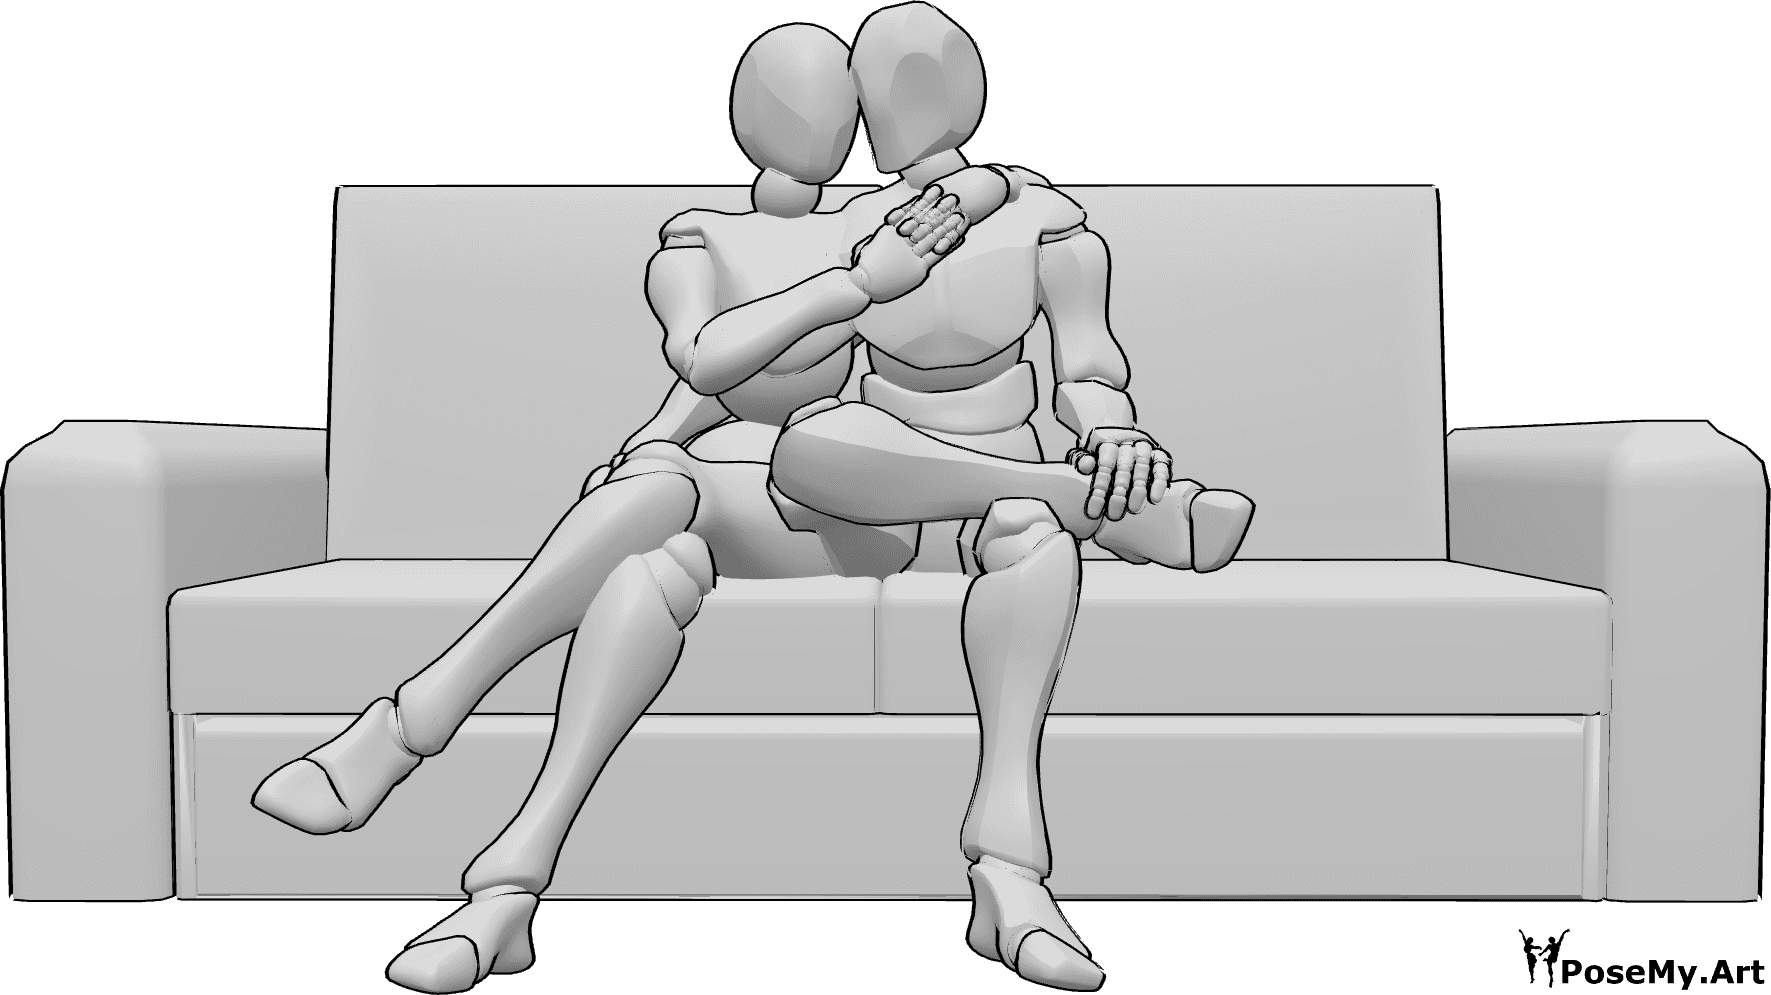 Riferimento alle pose- Posa del divano da seduti - Una donna e un uomo sono seduti sul divano e si coccolano, si abbracciano